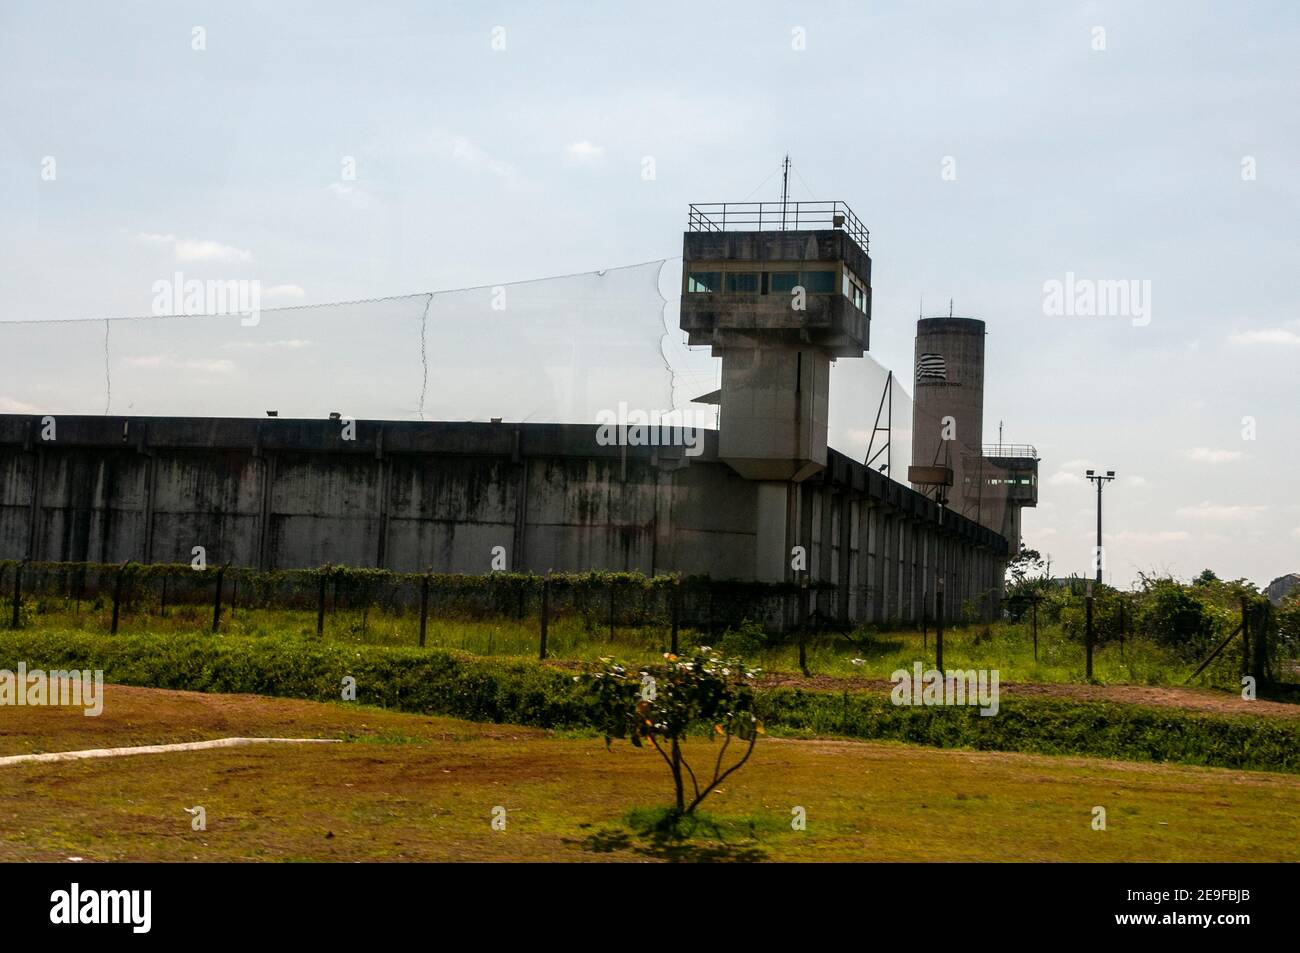 The prison guard tower at Penitenciária I 'Jose Parada Neto' de Guarulhos - Penitenciaria I de Guarulhos (Penitentiary I 'Jose Parada Neto' of Guarulh Stock Photo